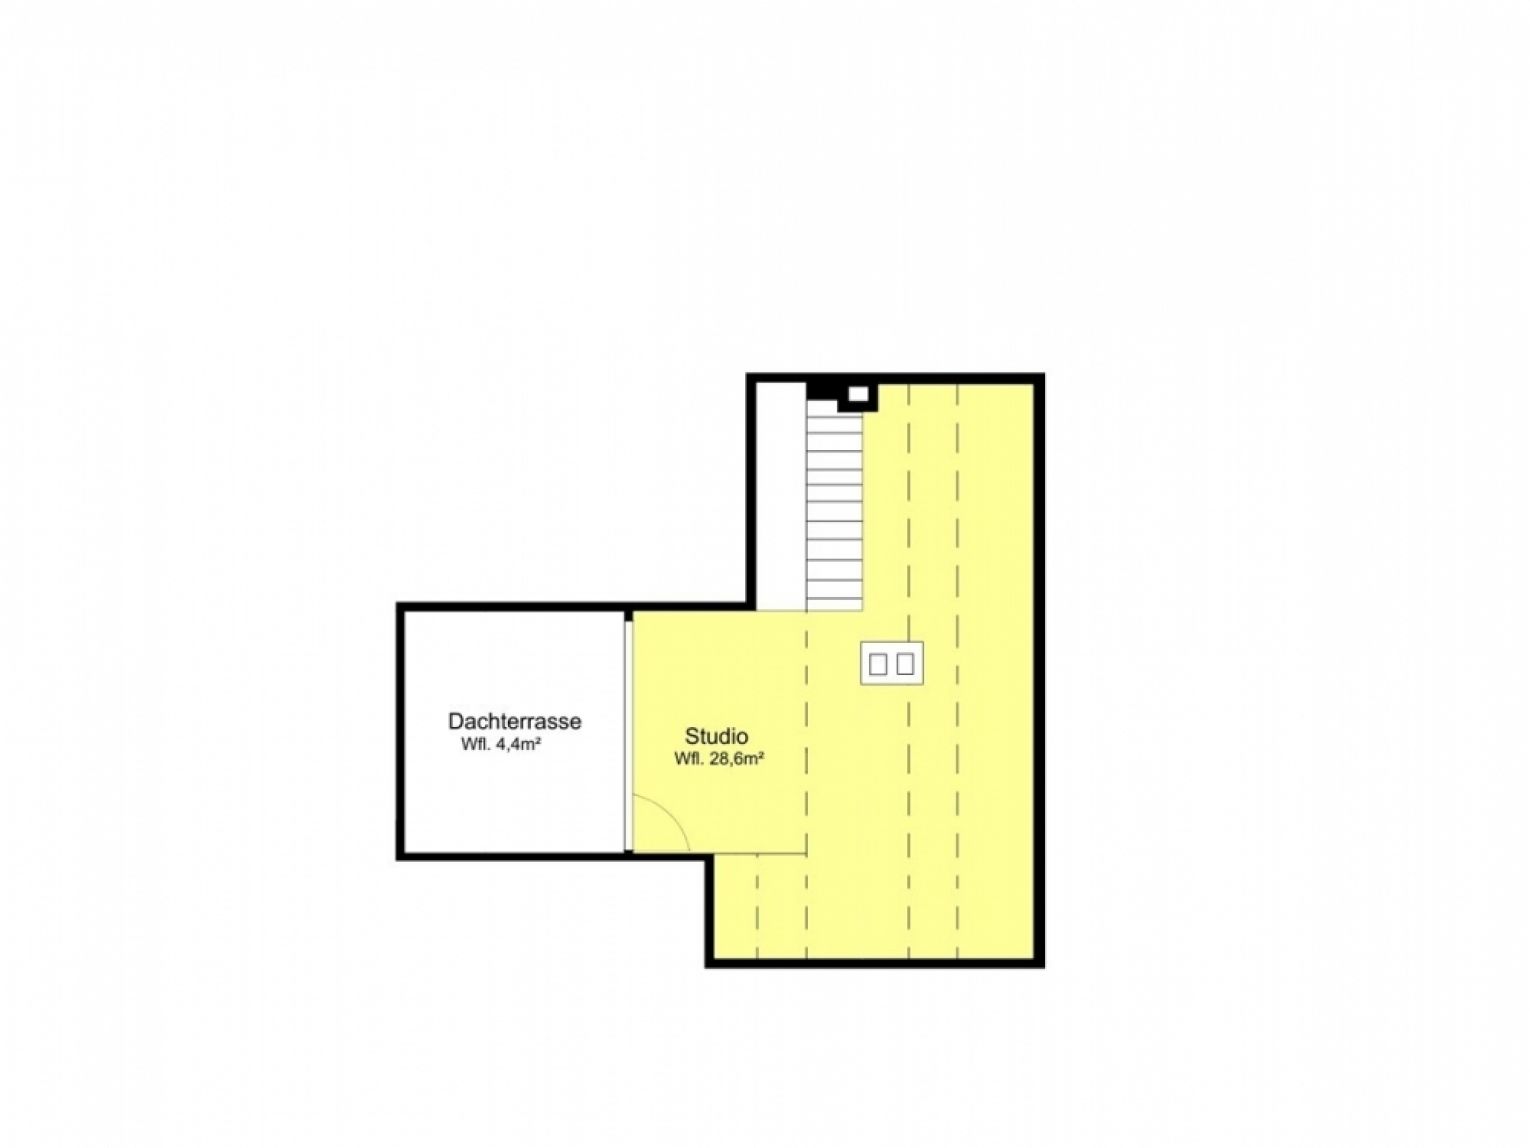 Dachterrasse mit tollem Ausblick • 4-Zimmer • Wohnküche • Laminat • Individuell einrichtbar